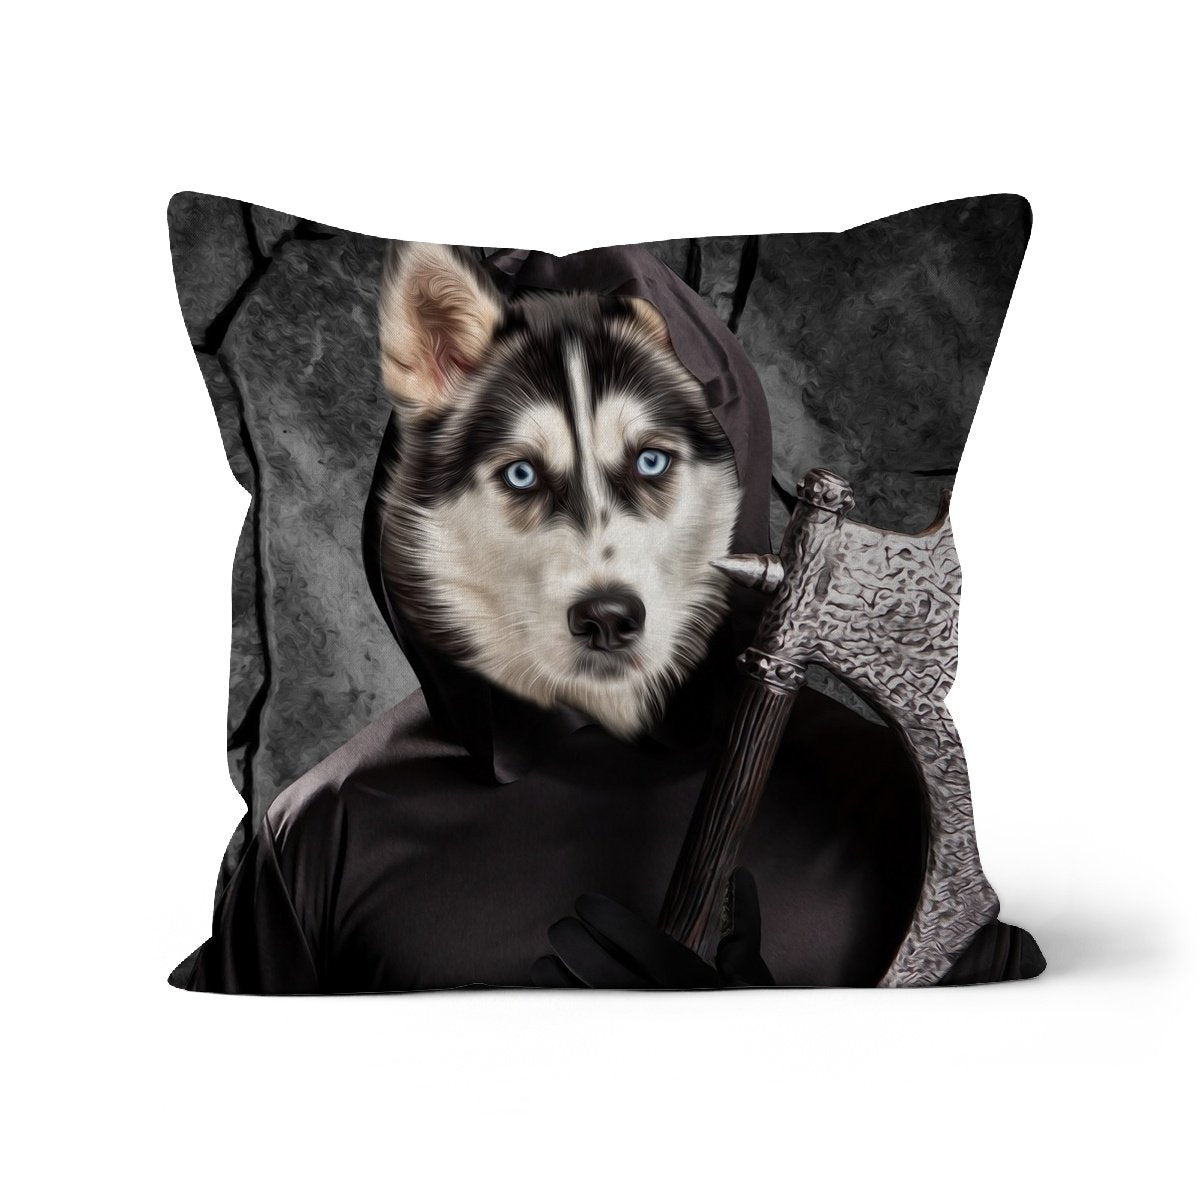 The Bark Reaper: Custom Pet Cushion - Paw & Glory - #pet portraits# - #dog portraits# - #pet portraits uk#paw and glory, pet portraits cushion,dog memory pillow, photo pet pillow, custom pillow of your pet, pet pillow, custom cat pillows